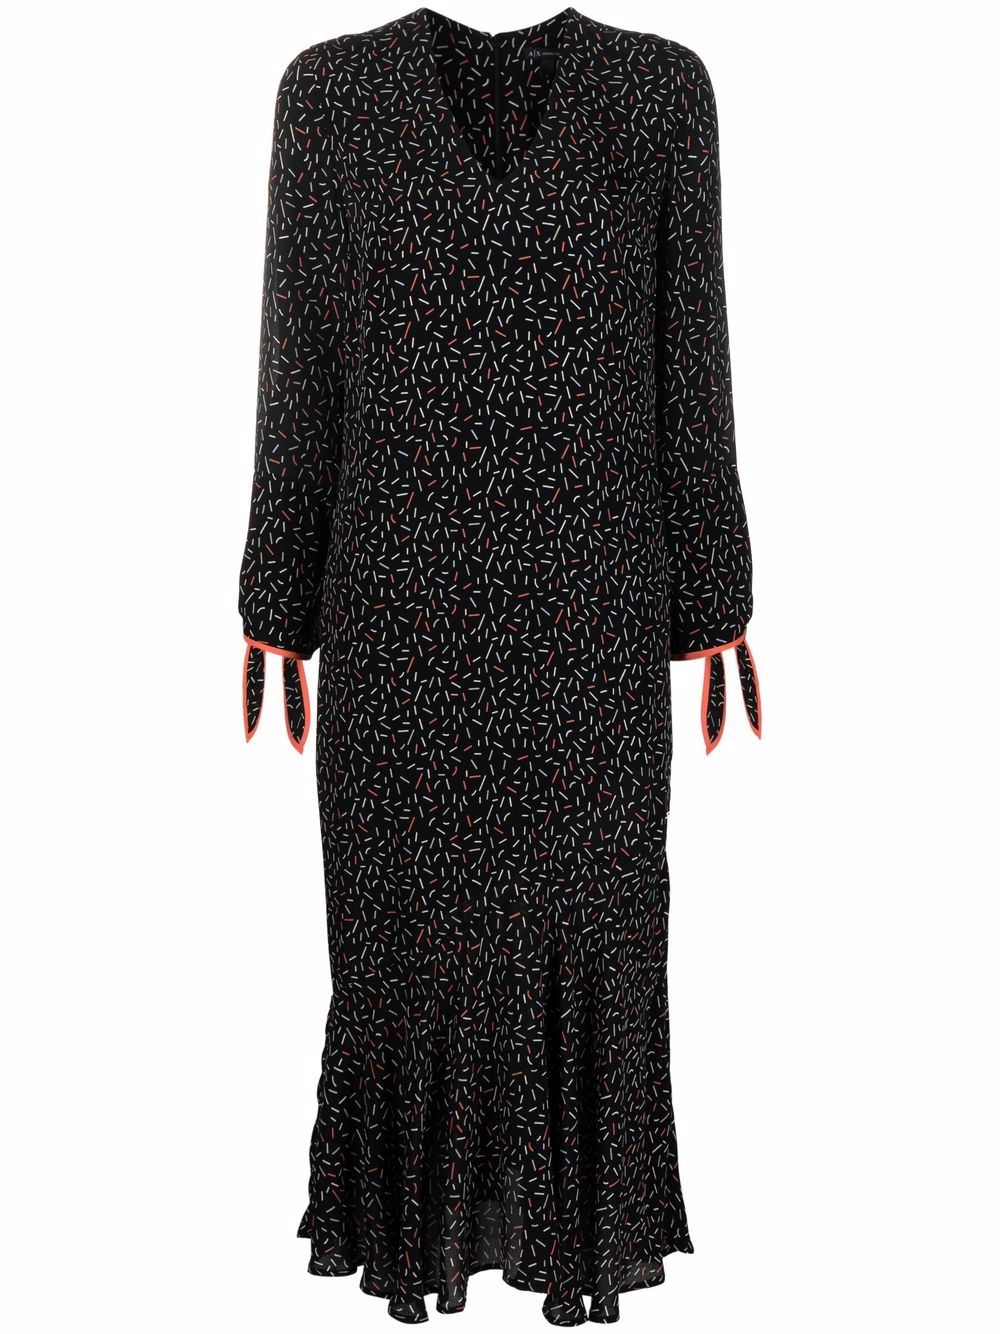 фото Armani exchange платье с v-образным вырезом и принтом